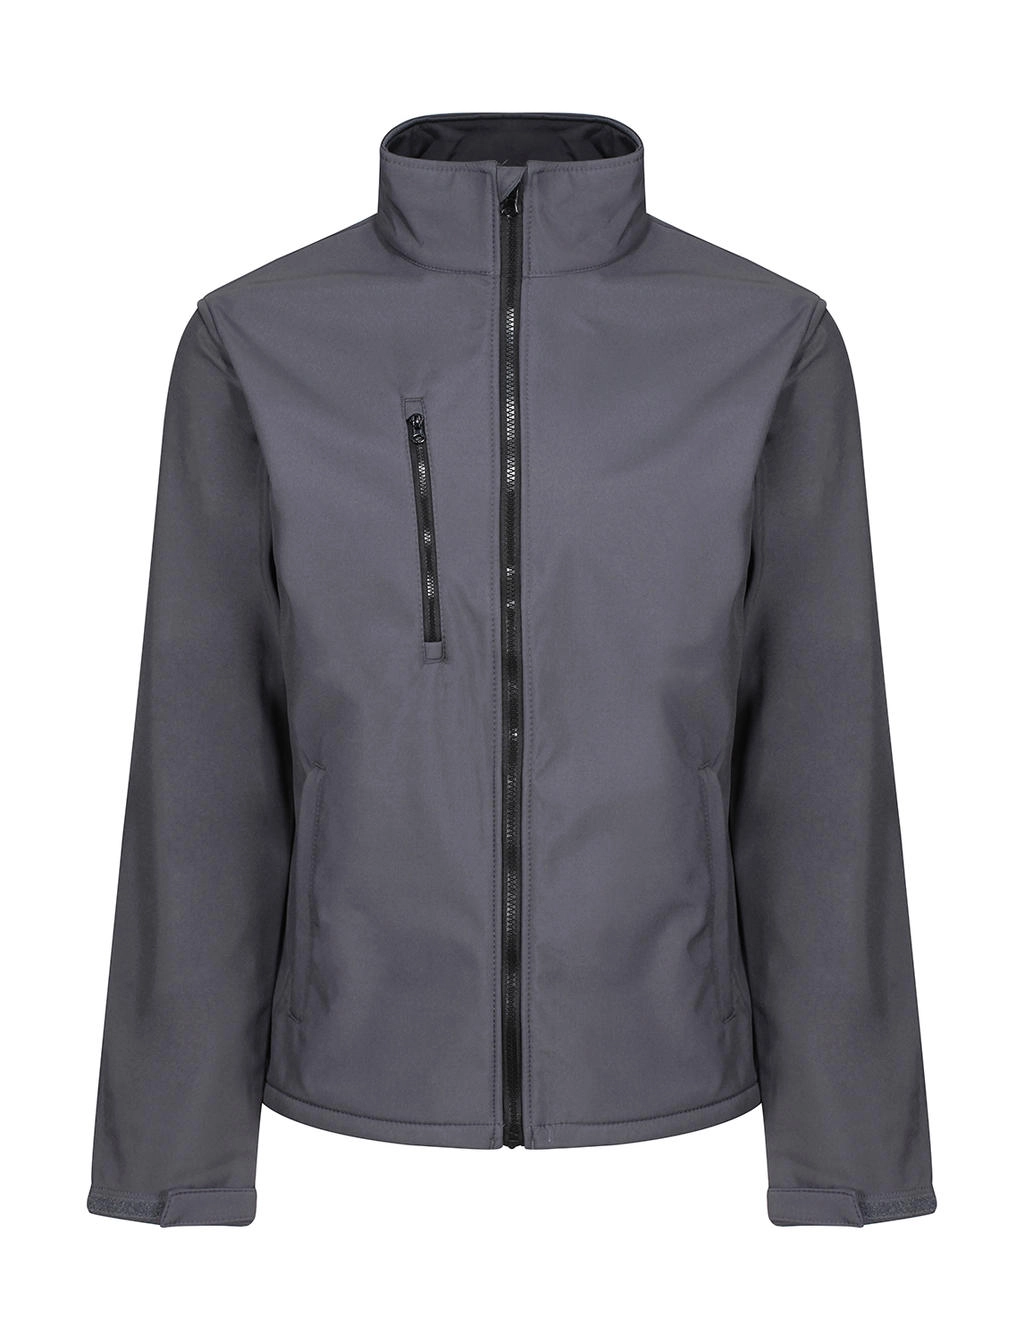 Ablaze 3 Layer Softshell Jacket zum Besticken und Bedrucken in der Farbe Seal Grey/Black mit Ihren Logo, Schriftzug oder Motiv.